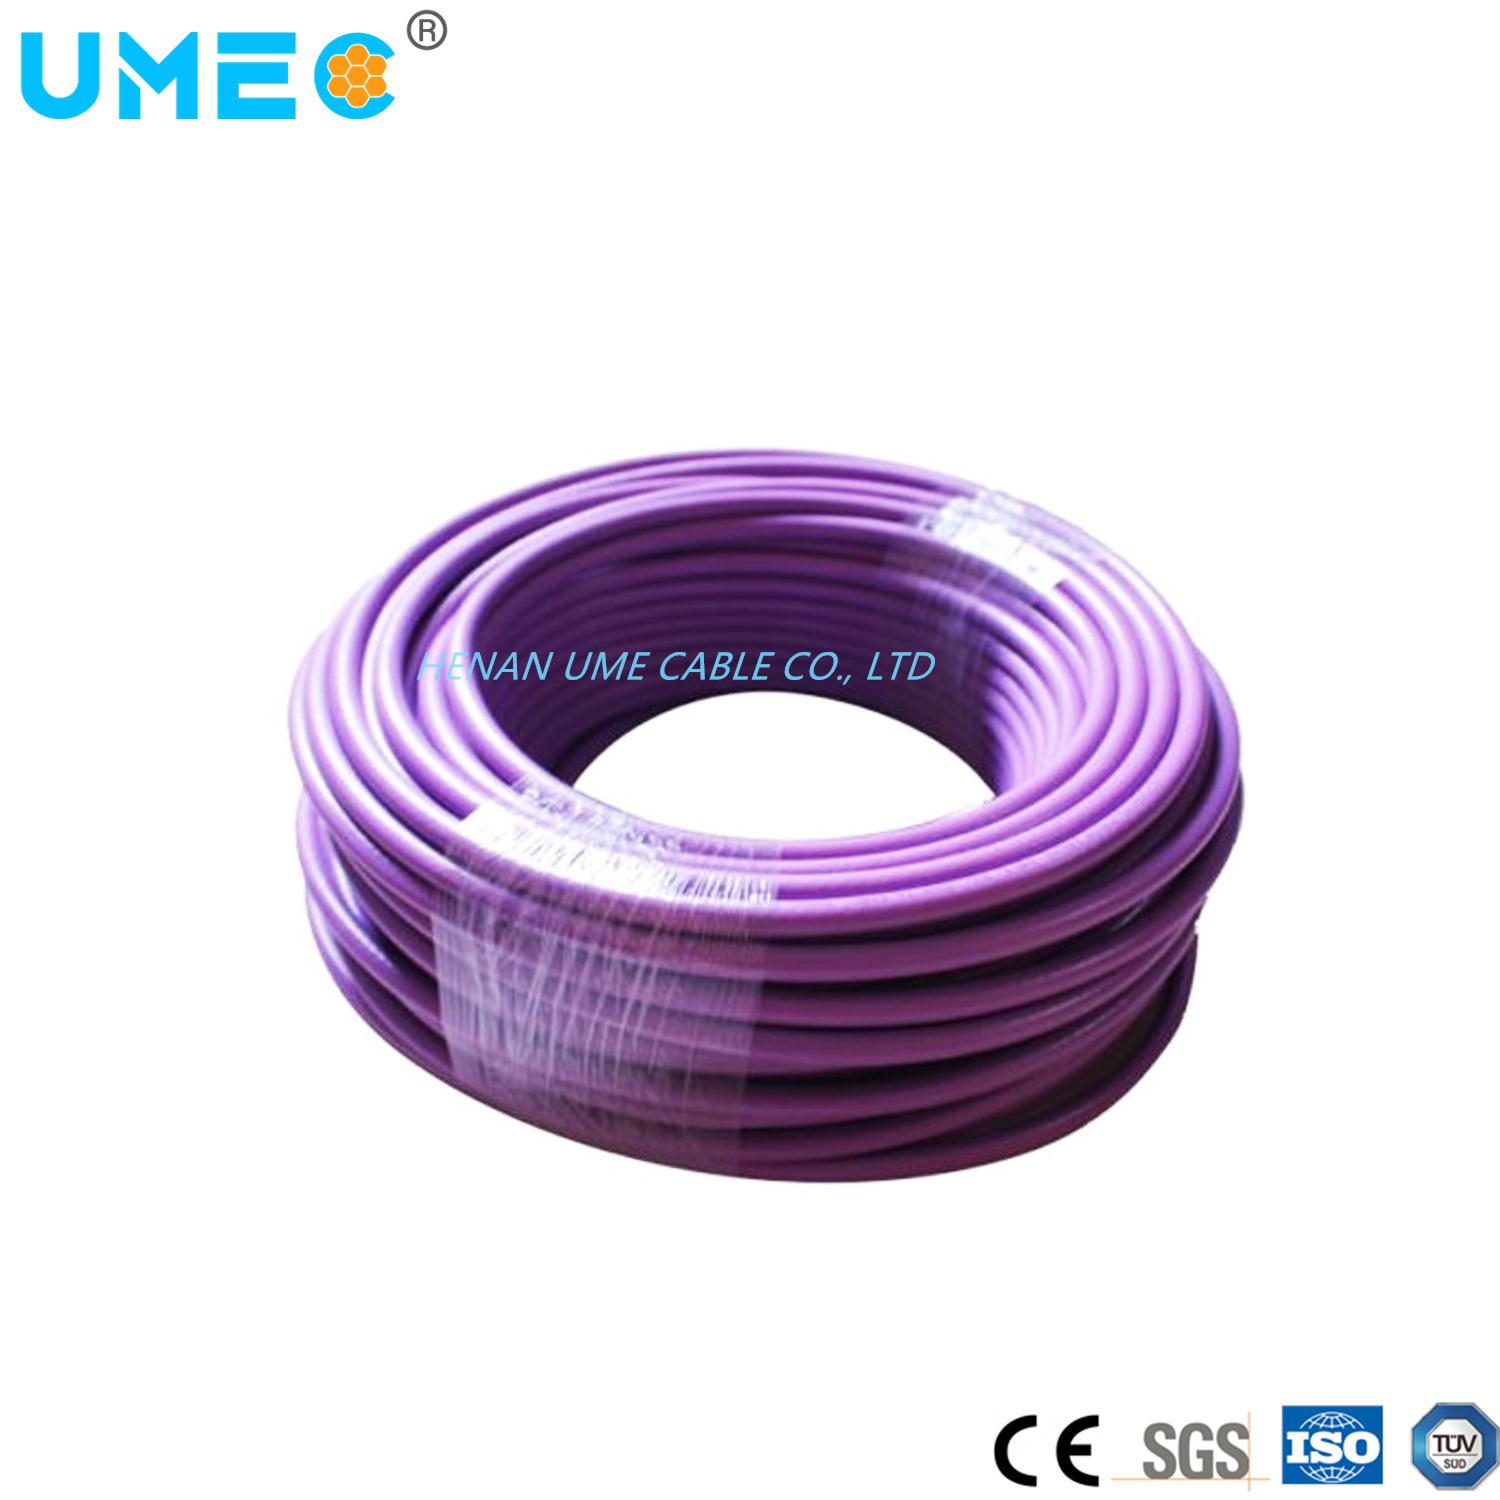 
                Cable y cable/6xv cable morado 6xv1830-0eh10 conductor de cobre de baja tensión Cable de conexión
            